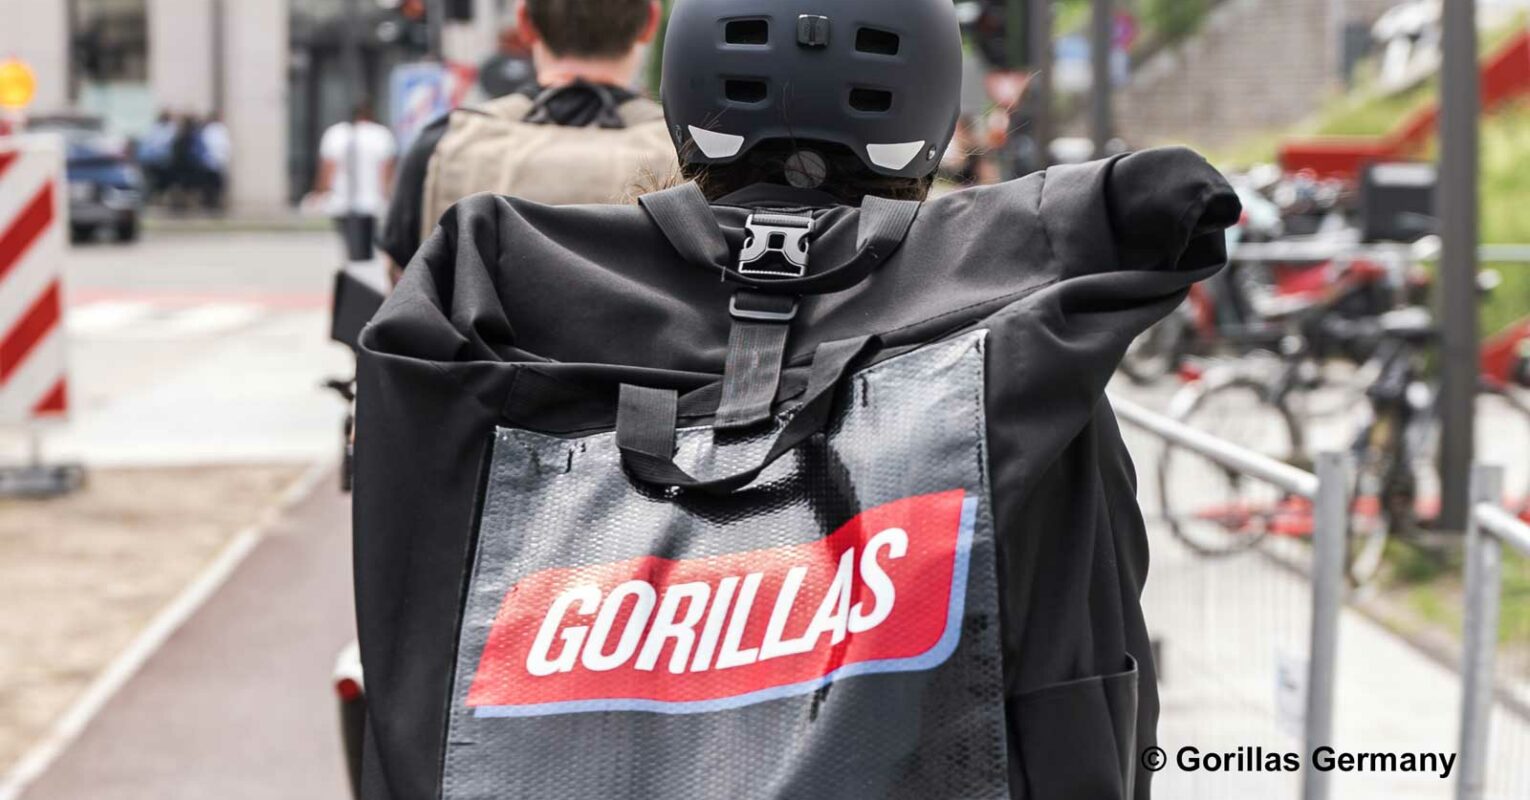 Lieferdienst Gorillas entlässt streikende Mitarbeiter